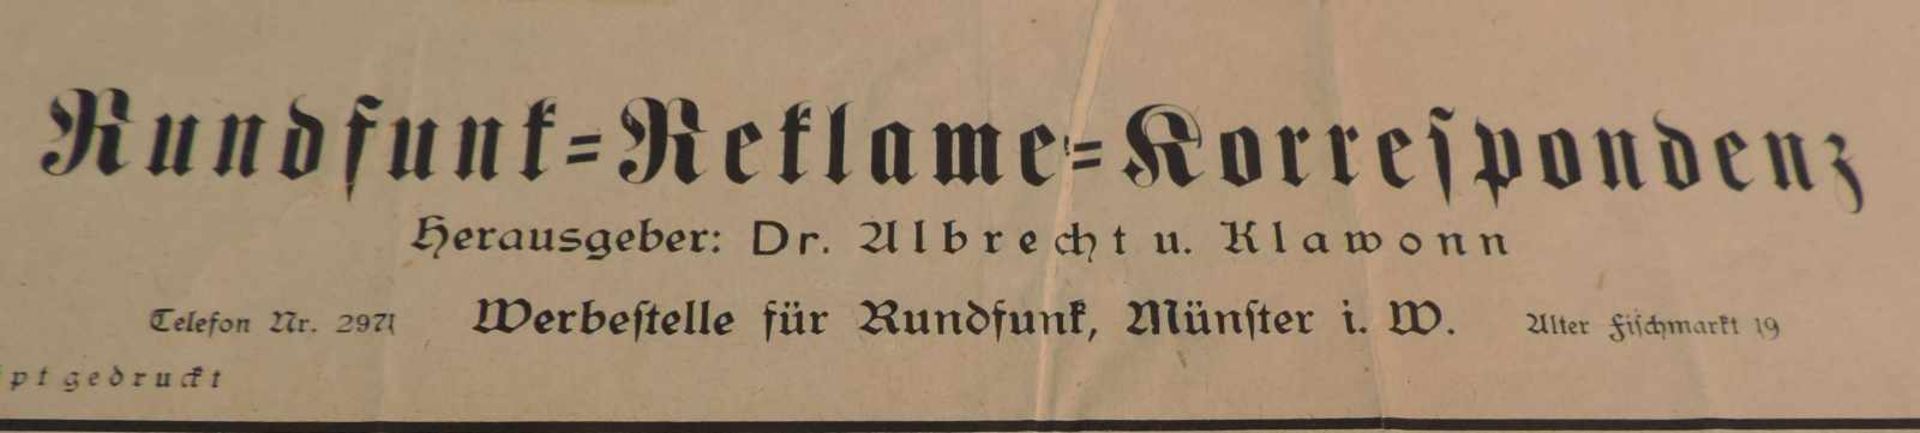 FLUGBLATT, Albrecht, Dr., und Klawonn, Werbestelle für Rundfunk, Hrg, Münster 1925, Rundfunk- - Image 2 of 2